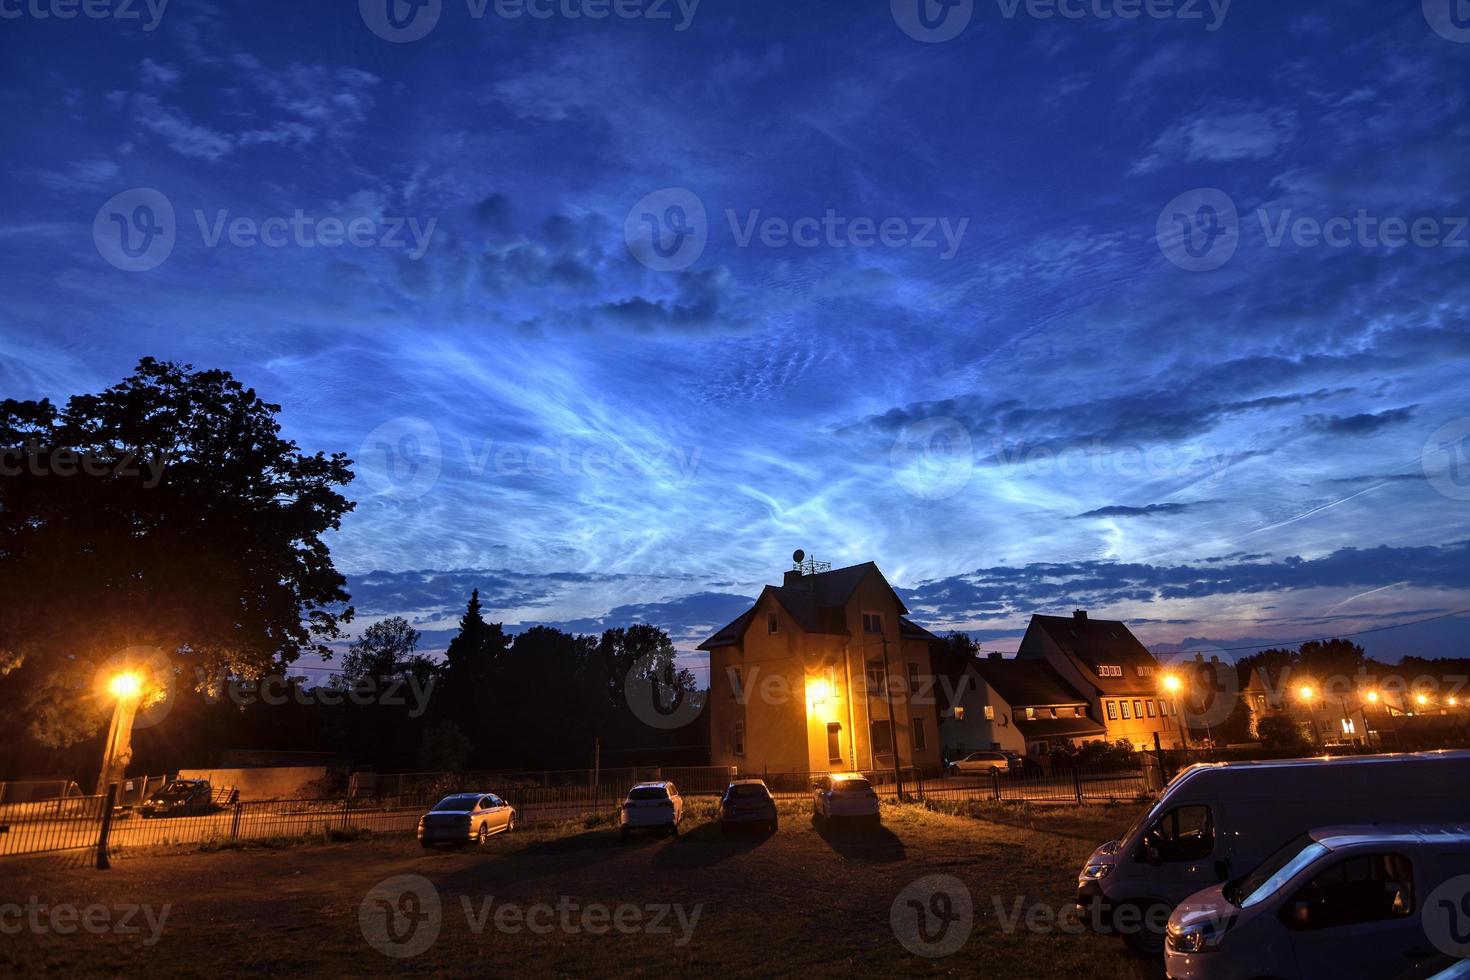 nuvens noctilucentes extremamente brilhantes e raras na cidade em 21 de junho de 2019 em uma noite de verão na alemanha foto